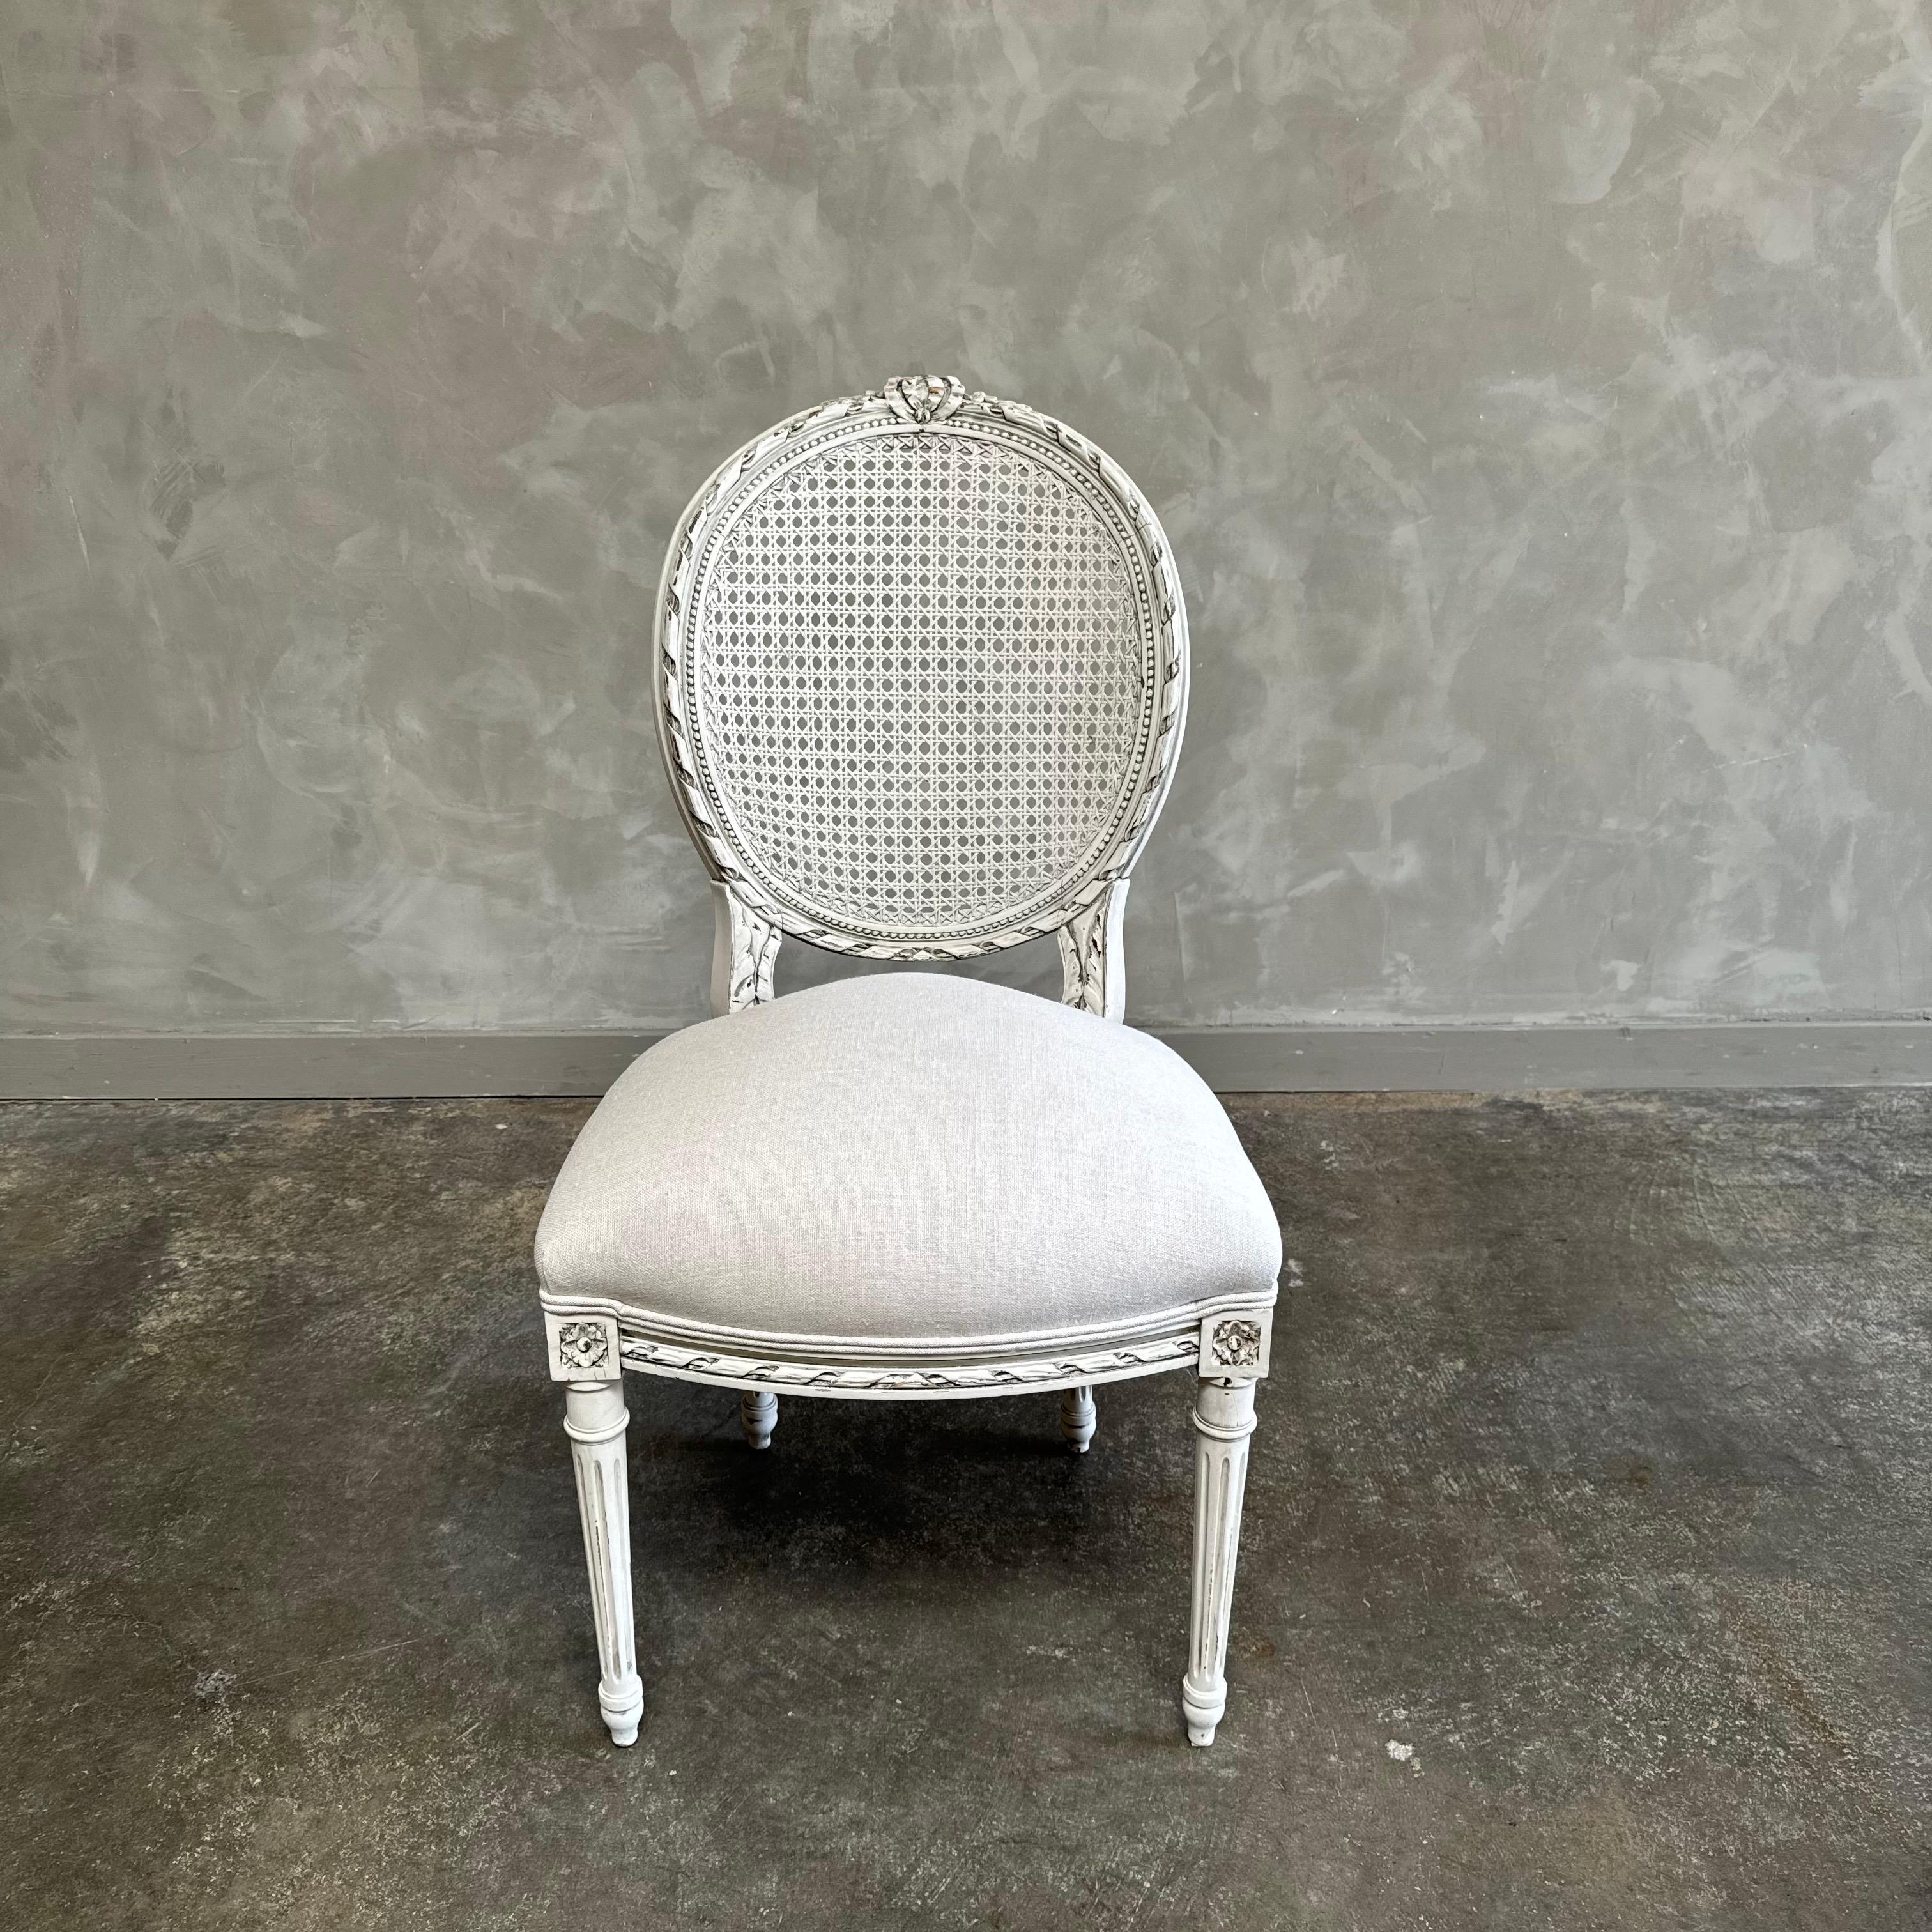 Ancienne chaise cannée française de style Louis XVI peinte en blanc d'huître français avec des bords subtilement en détresse, finie avec une patine antique. Dos de canne, solide et robuste, prêt pour un usage quotidien.
Canne en bon état. Chaise